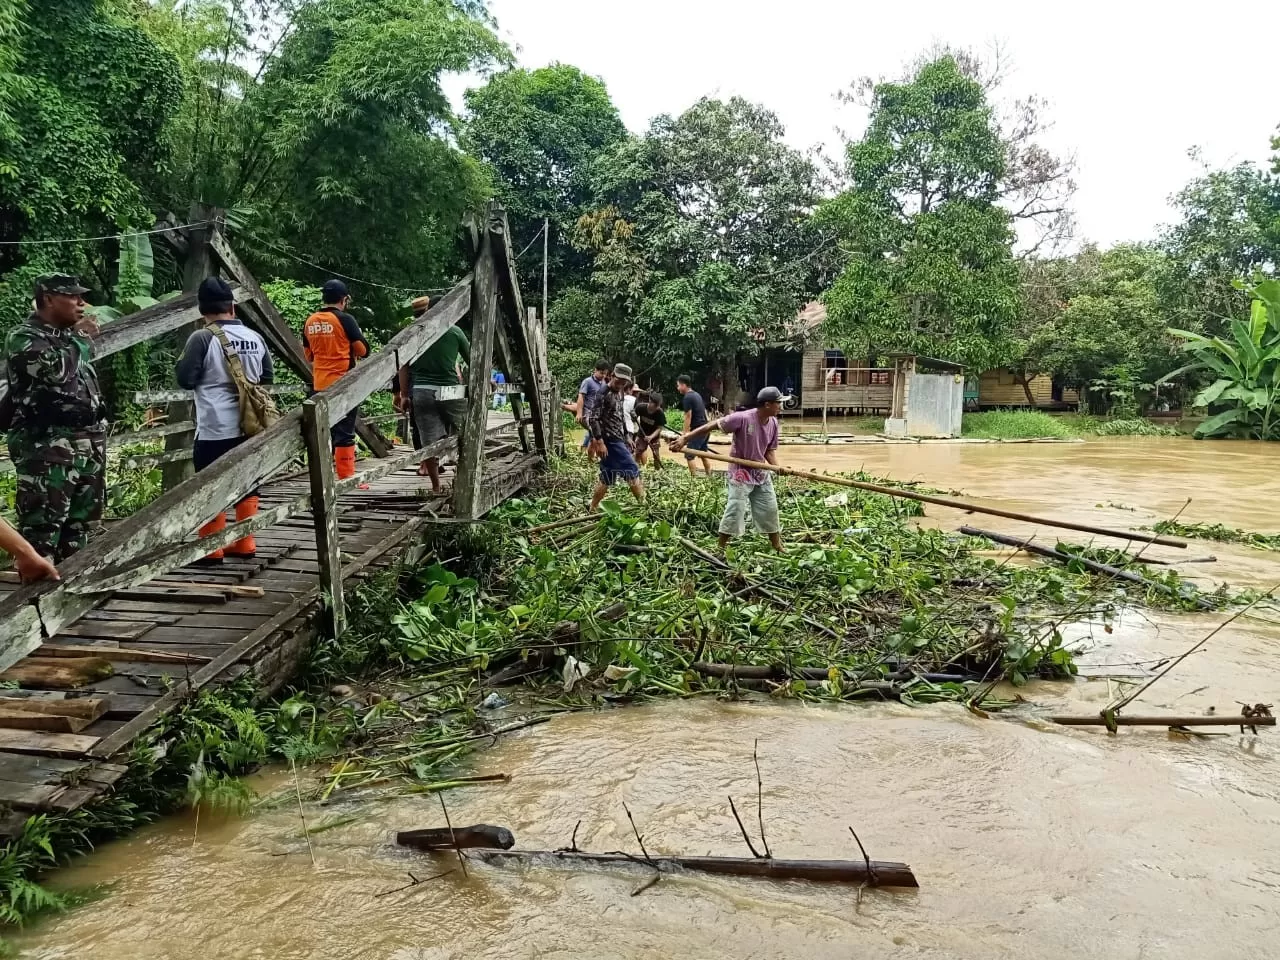 SAMPAH KIRIMAN: Sampah menumpuk di jembatan Guntur Jalan Kesumagiri Kelurahan Rangda Malingkung Kecamatan Tapin Utara.  |  Foto: Rasidi Fadli / Radar Banjarmasin